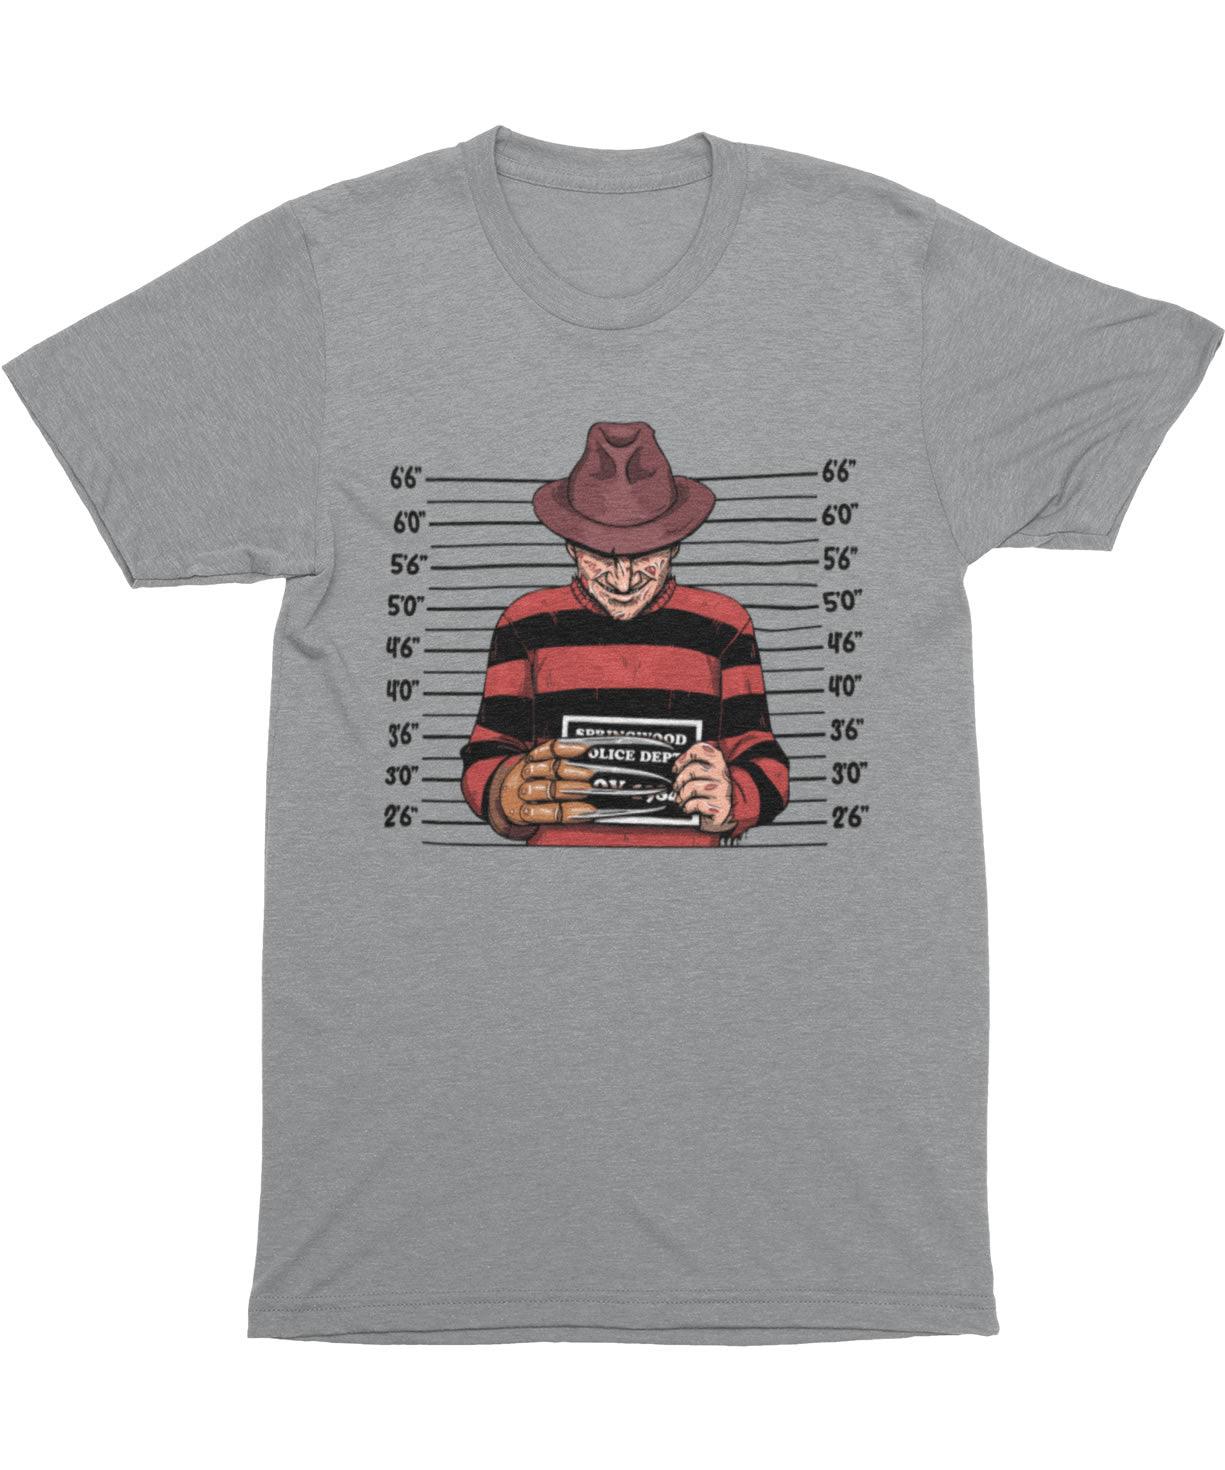 Freddy Krueger Mugshot Horror Film Tribute Mens Graphic T-Shirt 8Ball